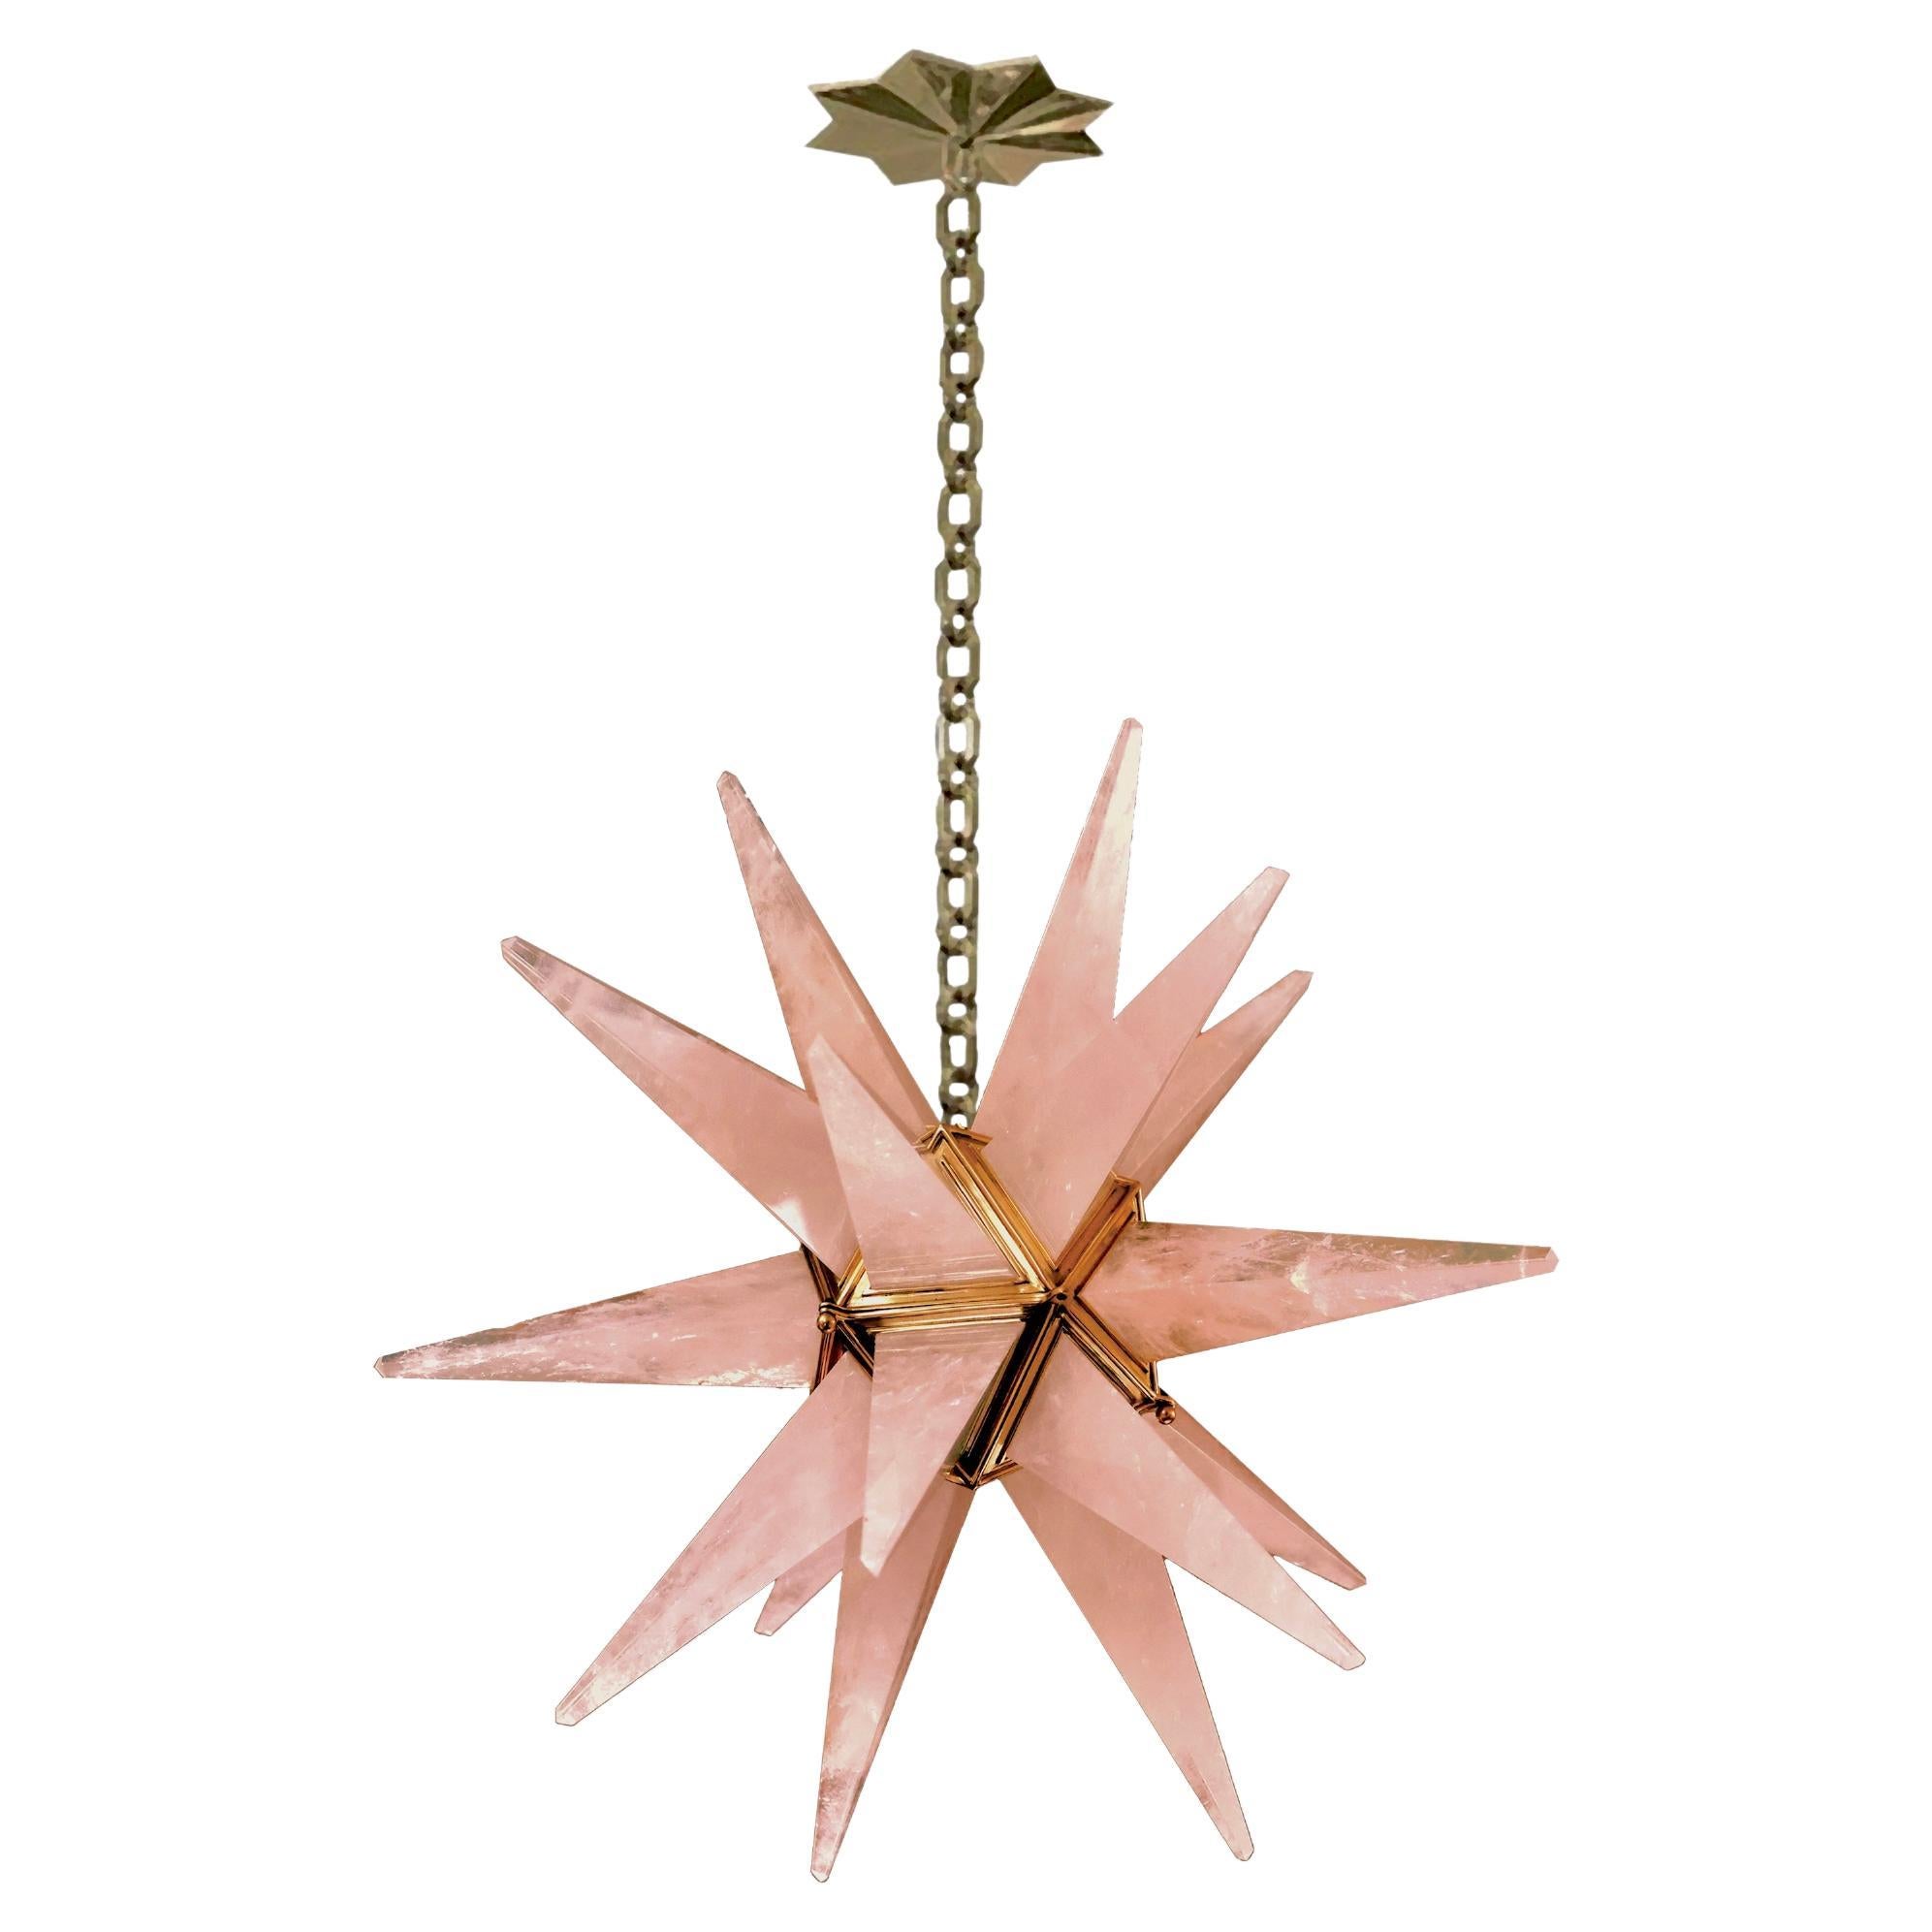 STAR25 Pink Rock Crystal Chandelier by Phoenix